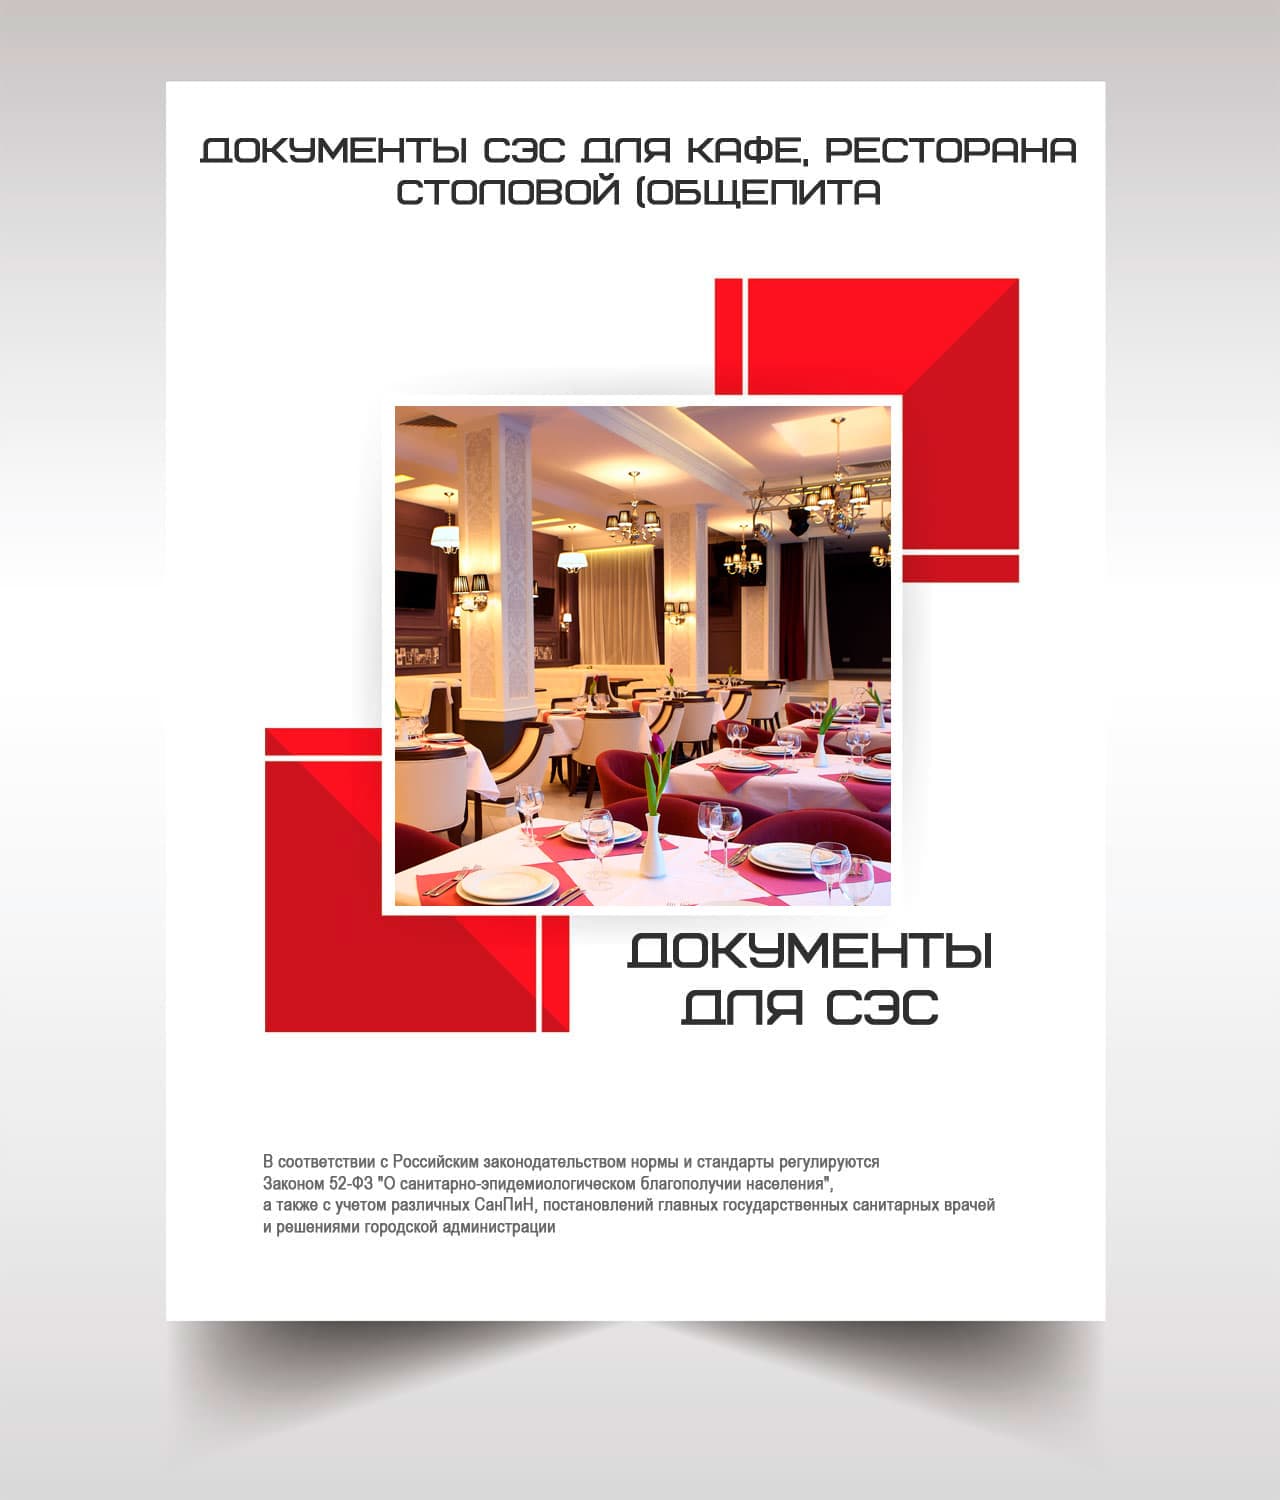 Документы для кафе, ресторана, столовой, общепита в Солнечногорске